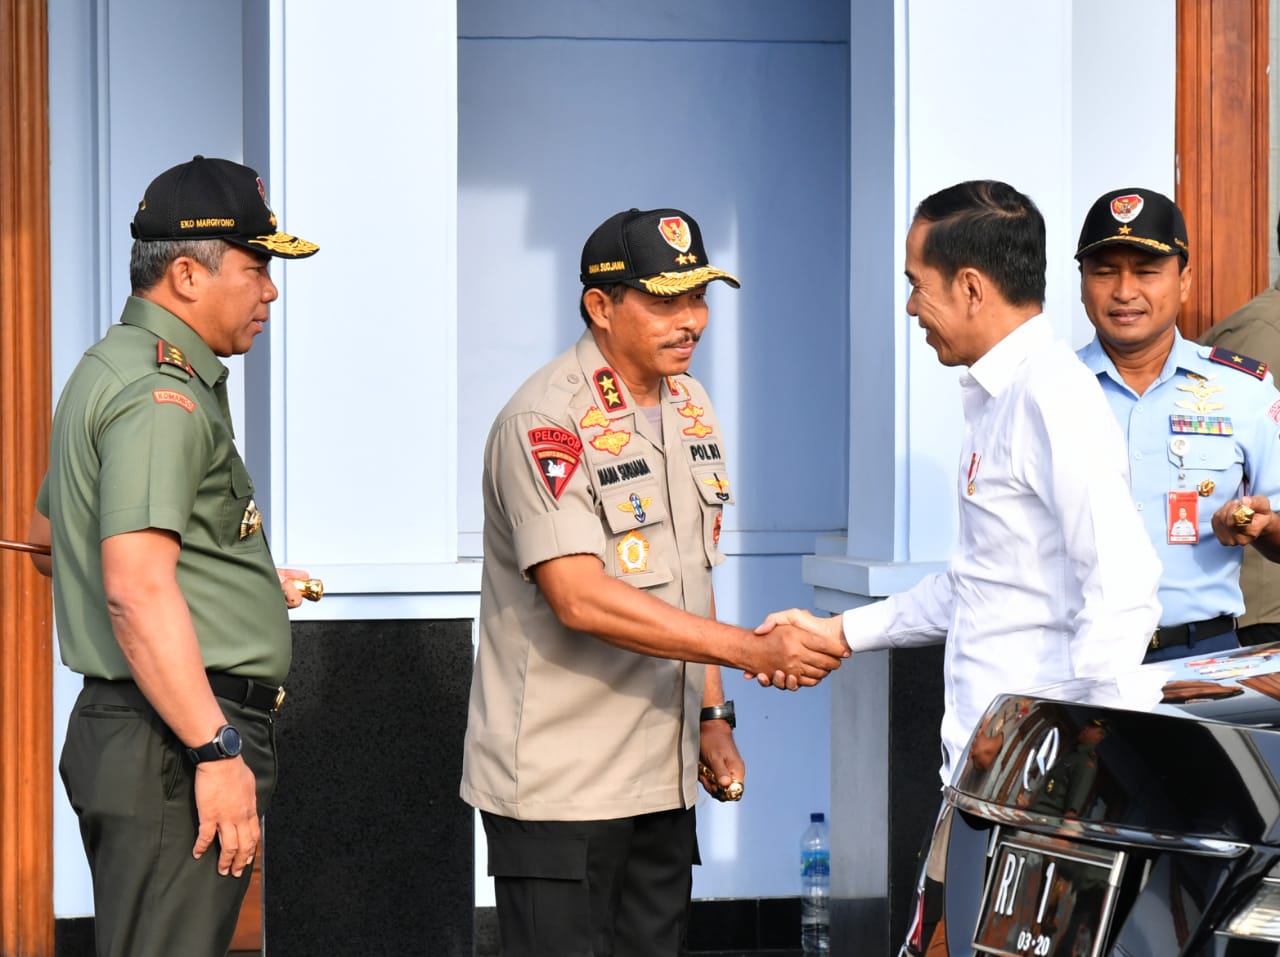 Bertolak ke Natuna, Presiden Jokowi Dijadwalkan Tinjau Jajar Kapal dan Bertemu Nelayan